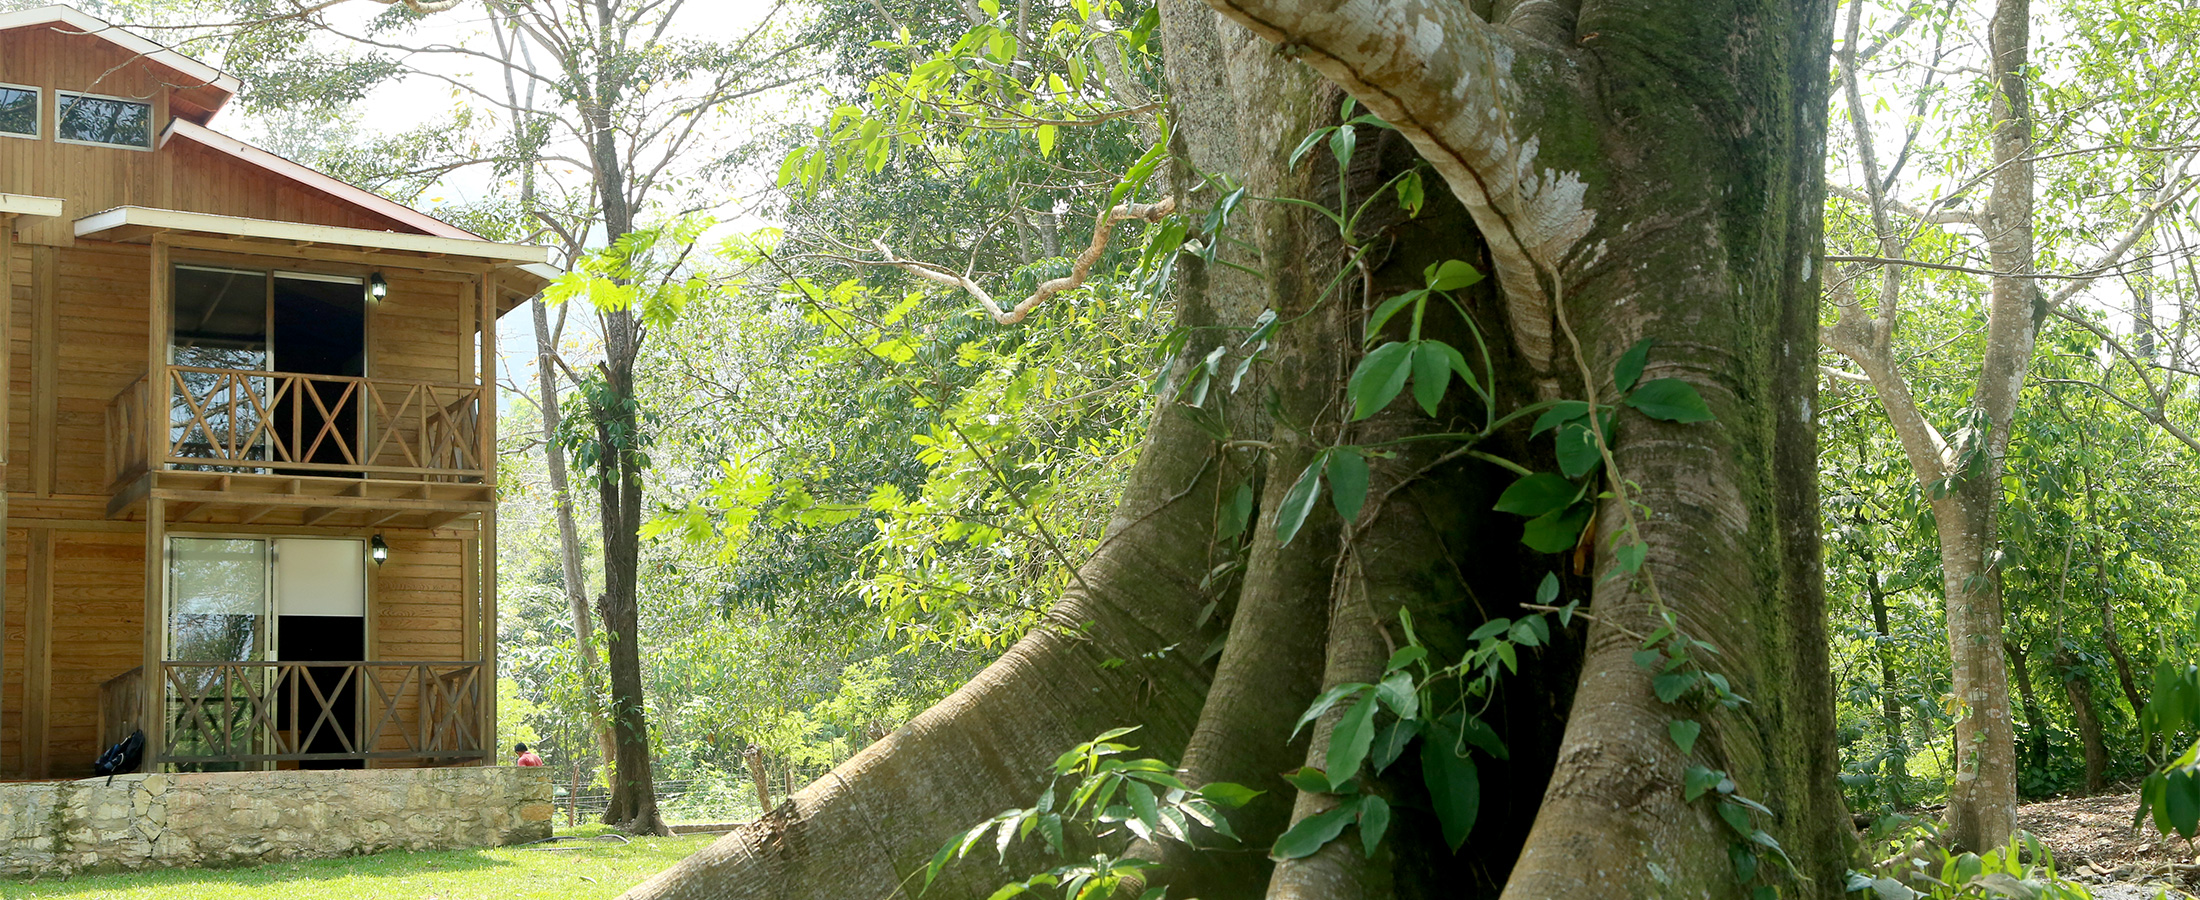 En Winika Habitat verás las maravillas naturales de Palenque Chiapas